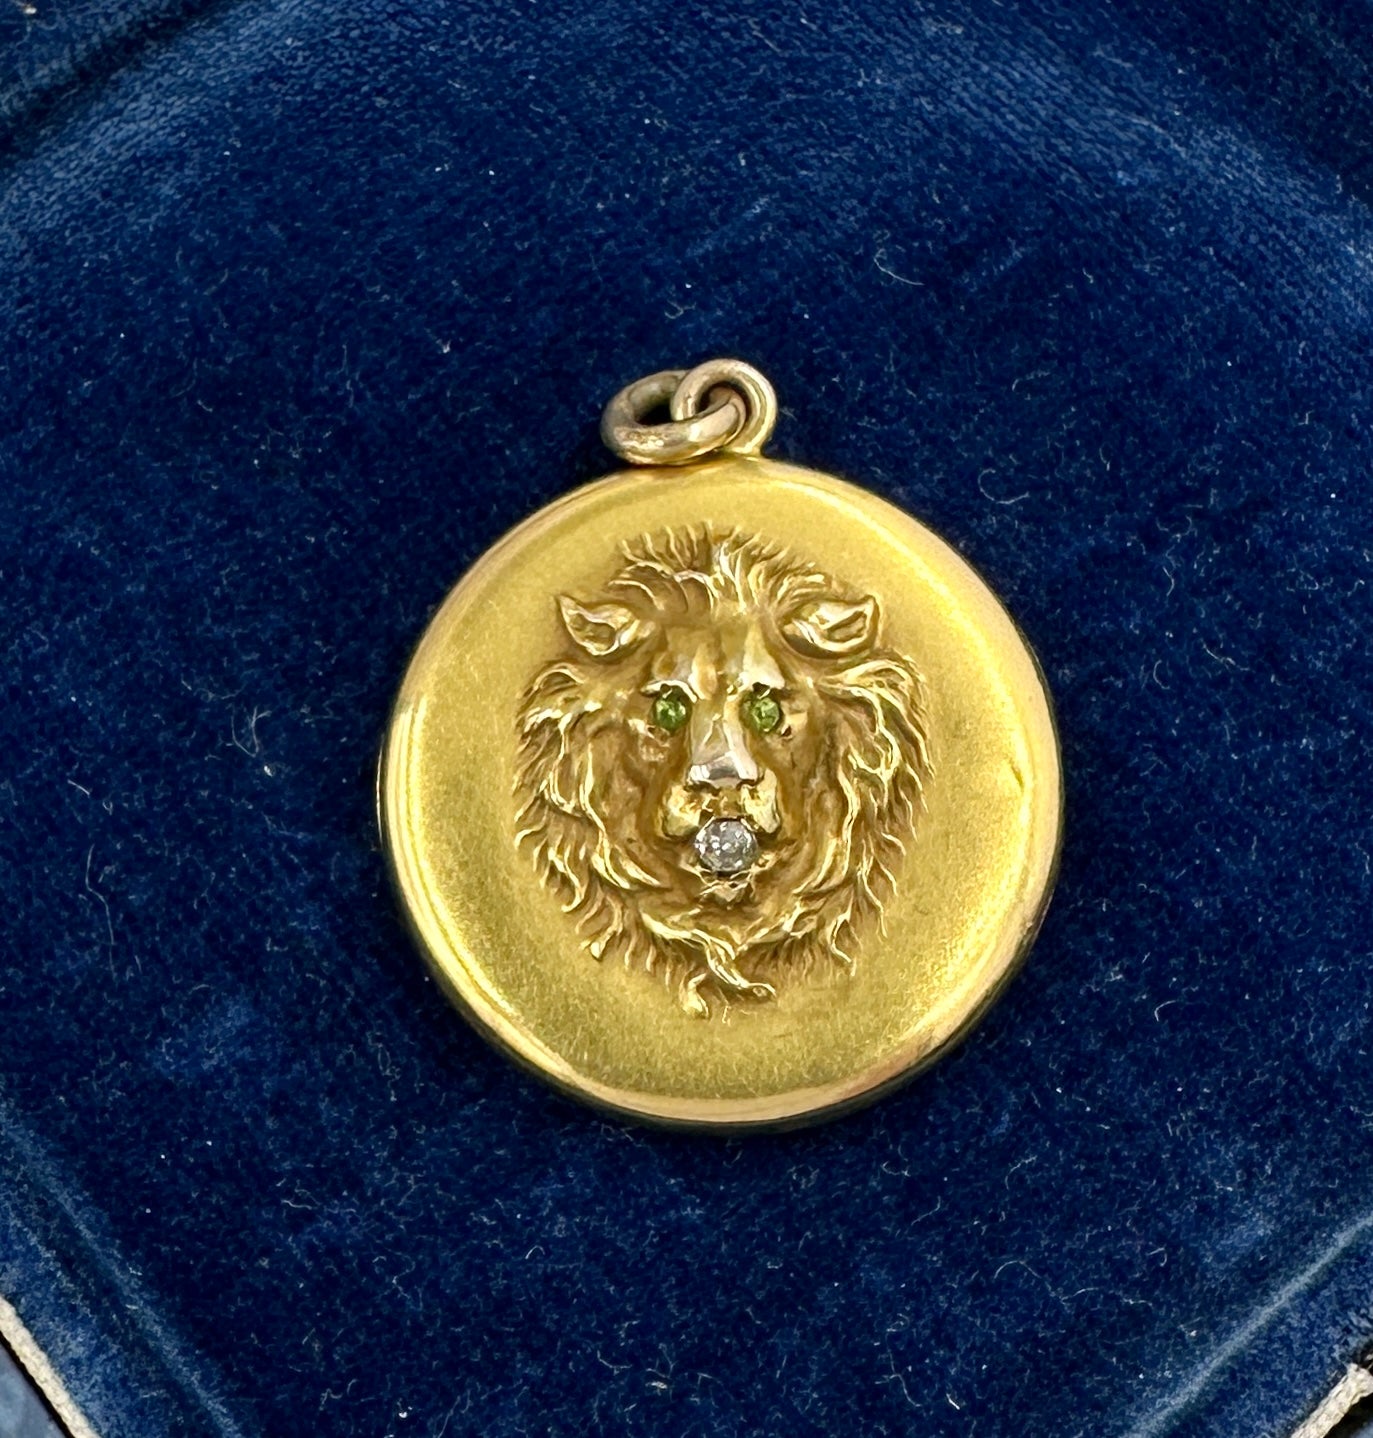 Dies ist eine spektakuläre antike viktorianische Löwen Medaillon in 10 Karat Gold mit einem alten Mine Cut Diamond in den Mund und zwei funkelnden grünen Peridot Edelsteine in den Augen, in einem außergewöhnlichen dreidimensionalen Design.  Das